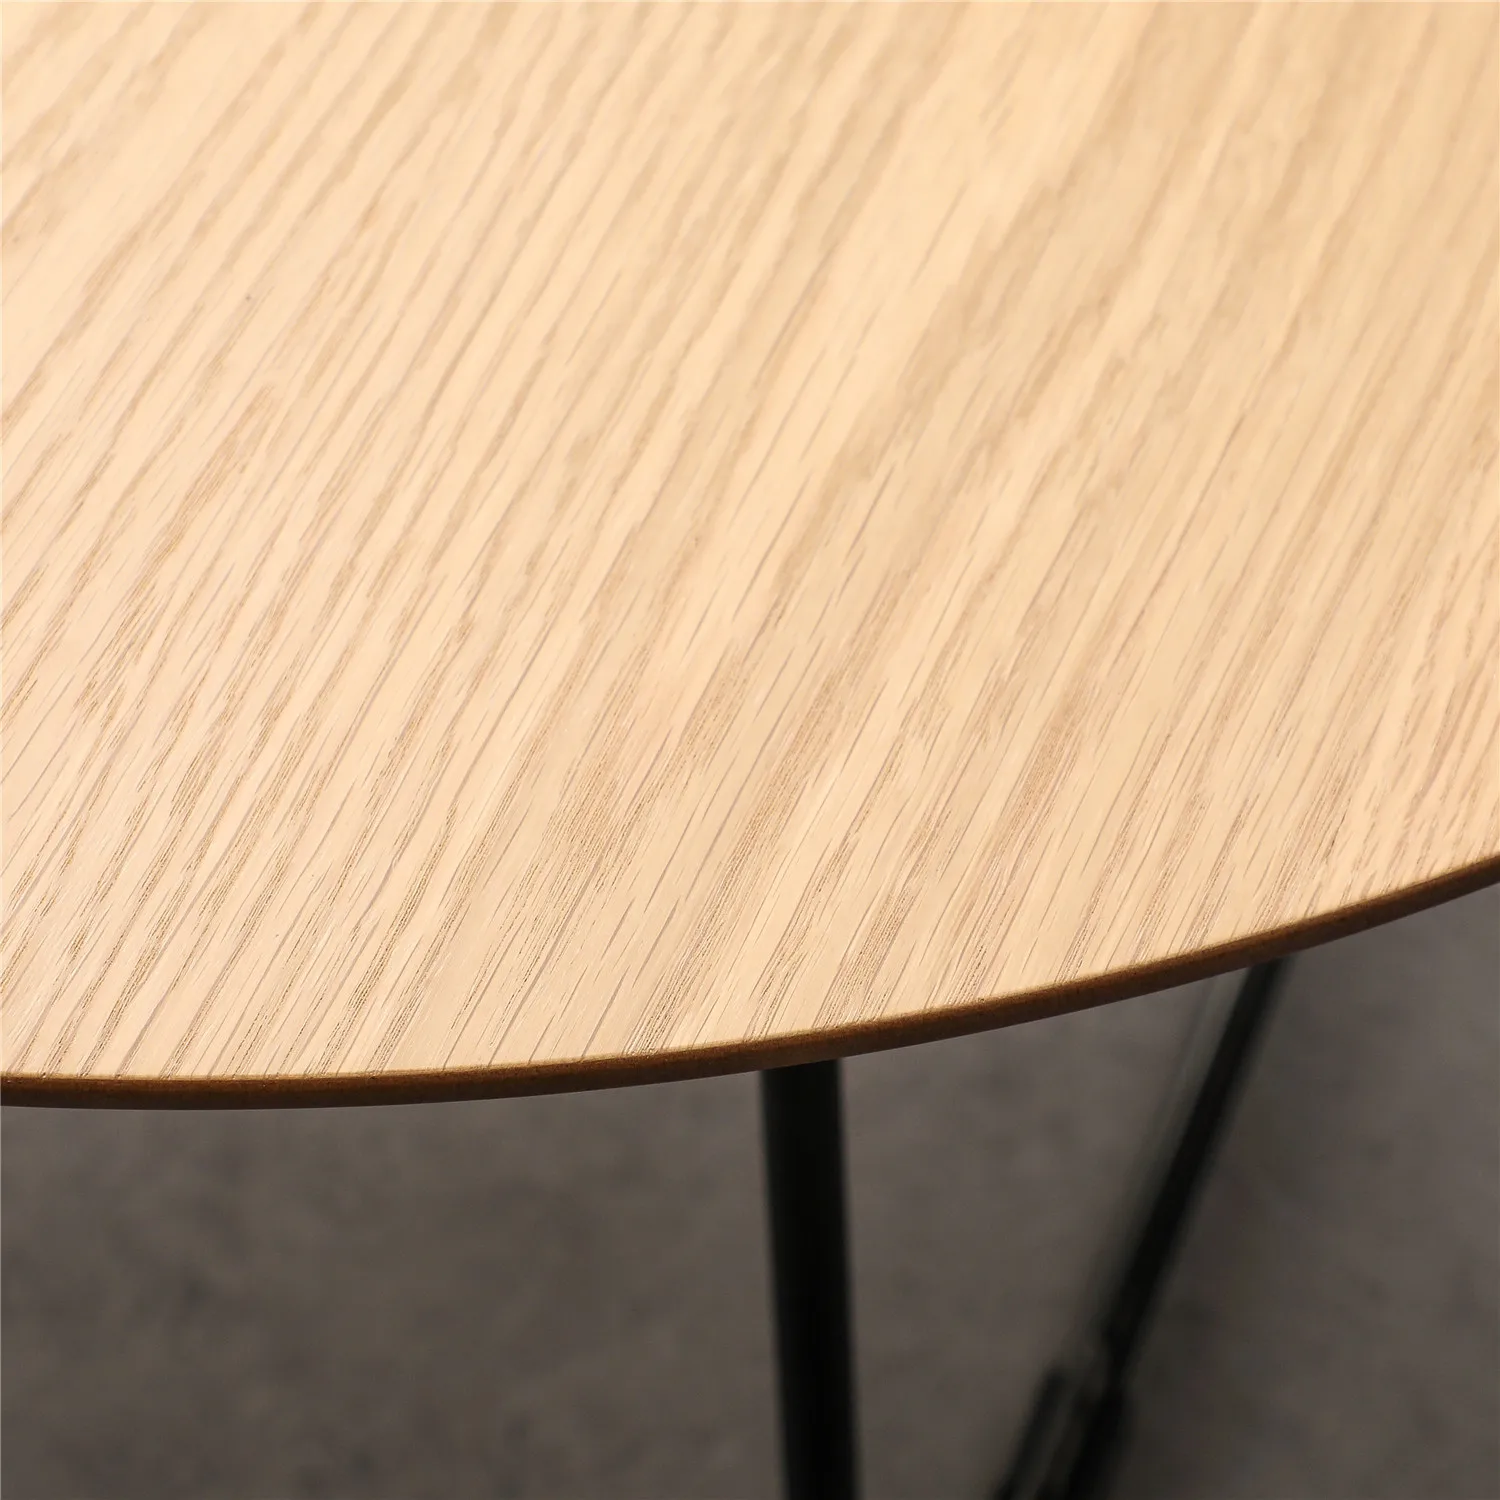 Мебель для маленького дома, современный деревянный овальный журнальный столик из МДФ с металлическим основанием